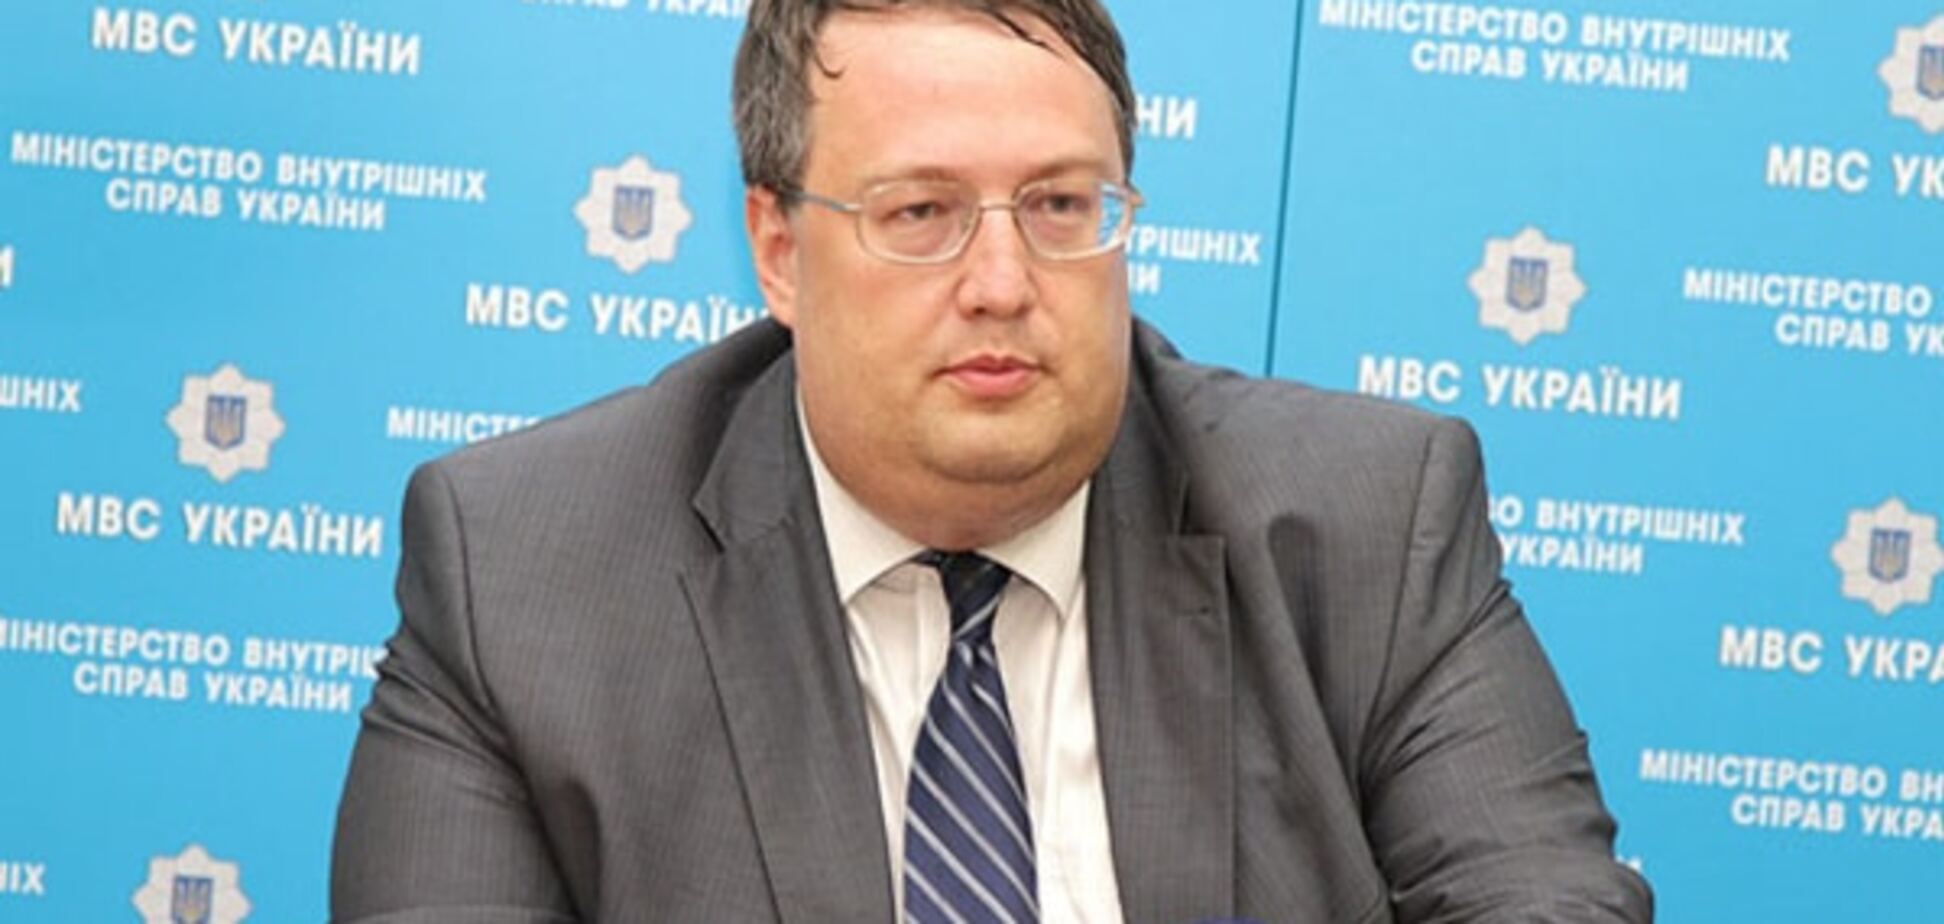 Геращенко: схему підкупу виборців у Дніпропетровську організували в Москві